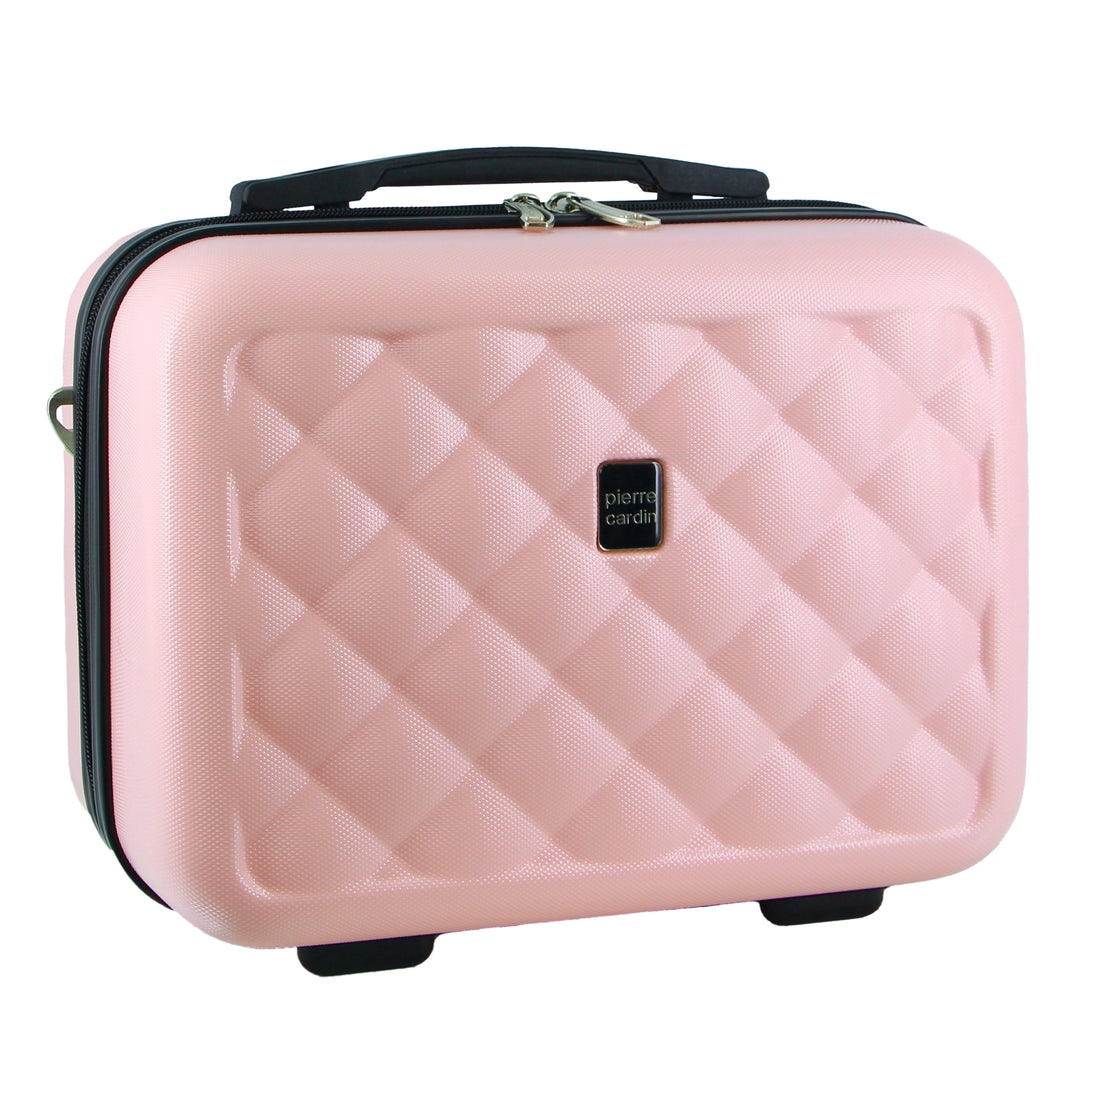 Pierre Cardin Hard Shell Beauty Case Pink